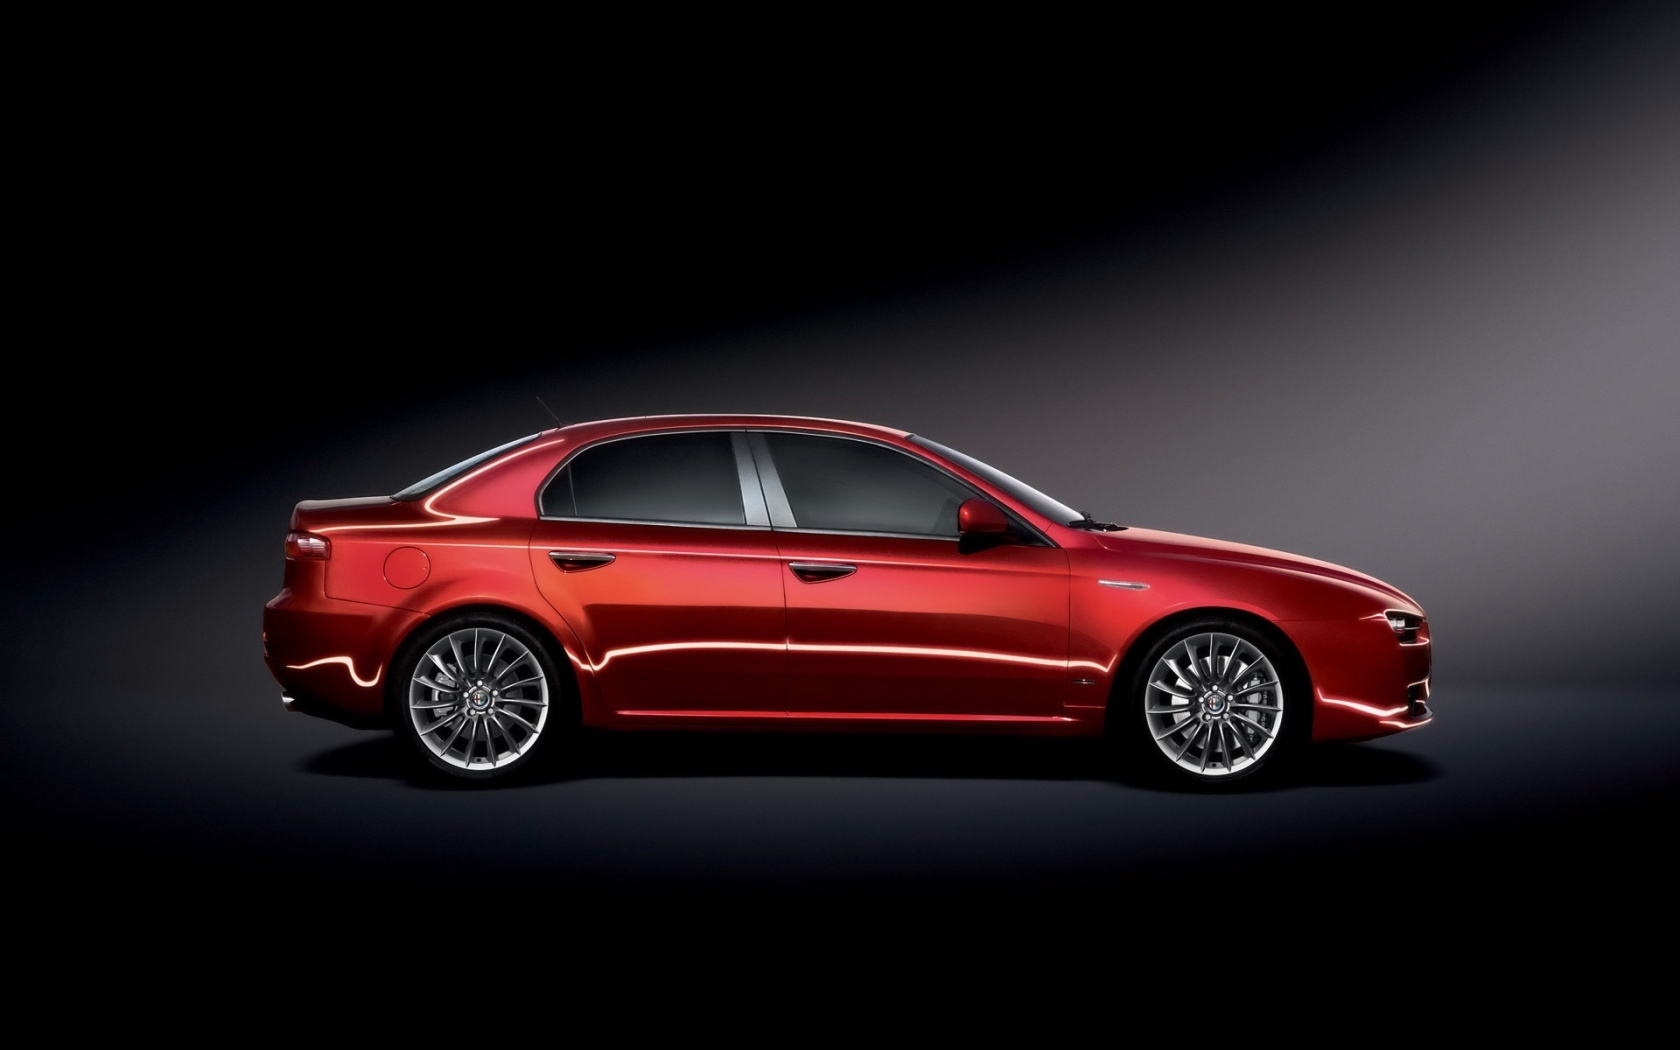 Alfa Romeo 159 2009 Studio for 1680 x 1050 widescreen resolution